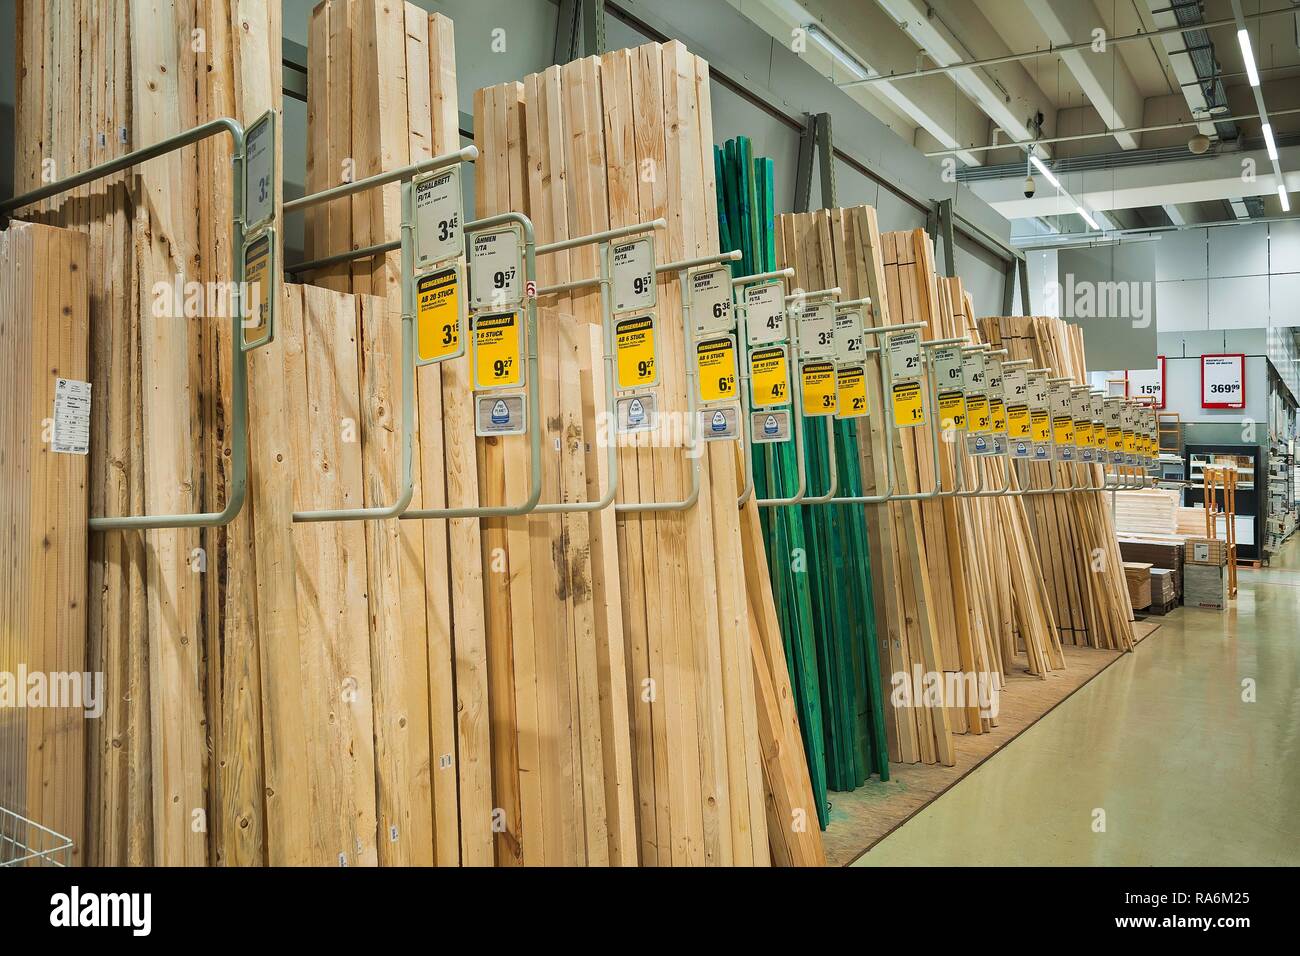 Travi in legno, negozio di ferramenta, Germania Foto Stock